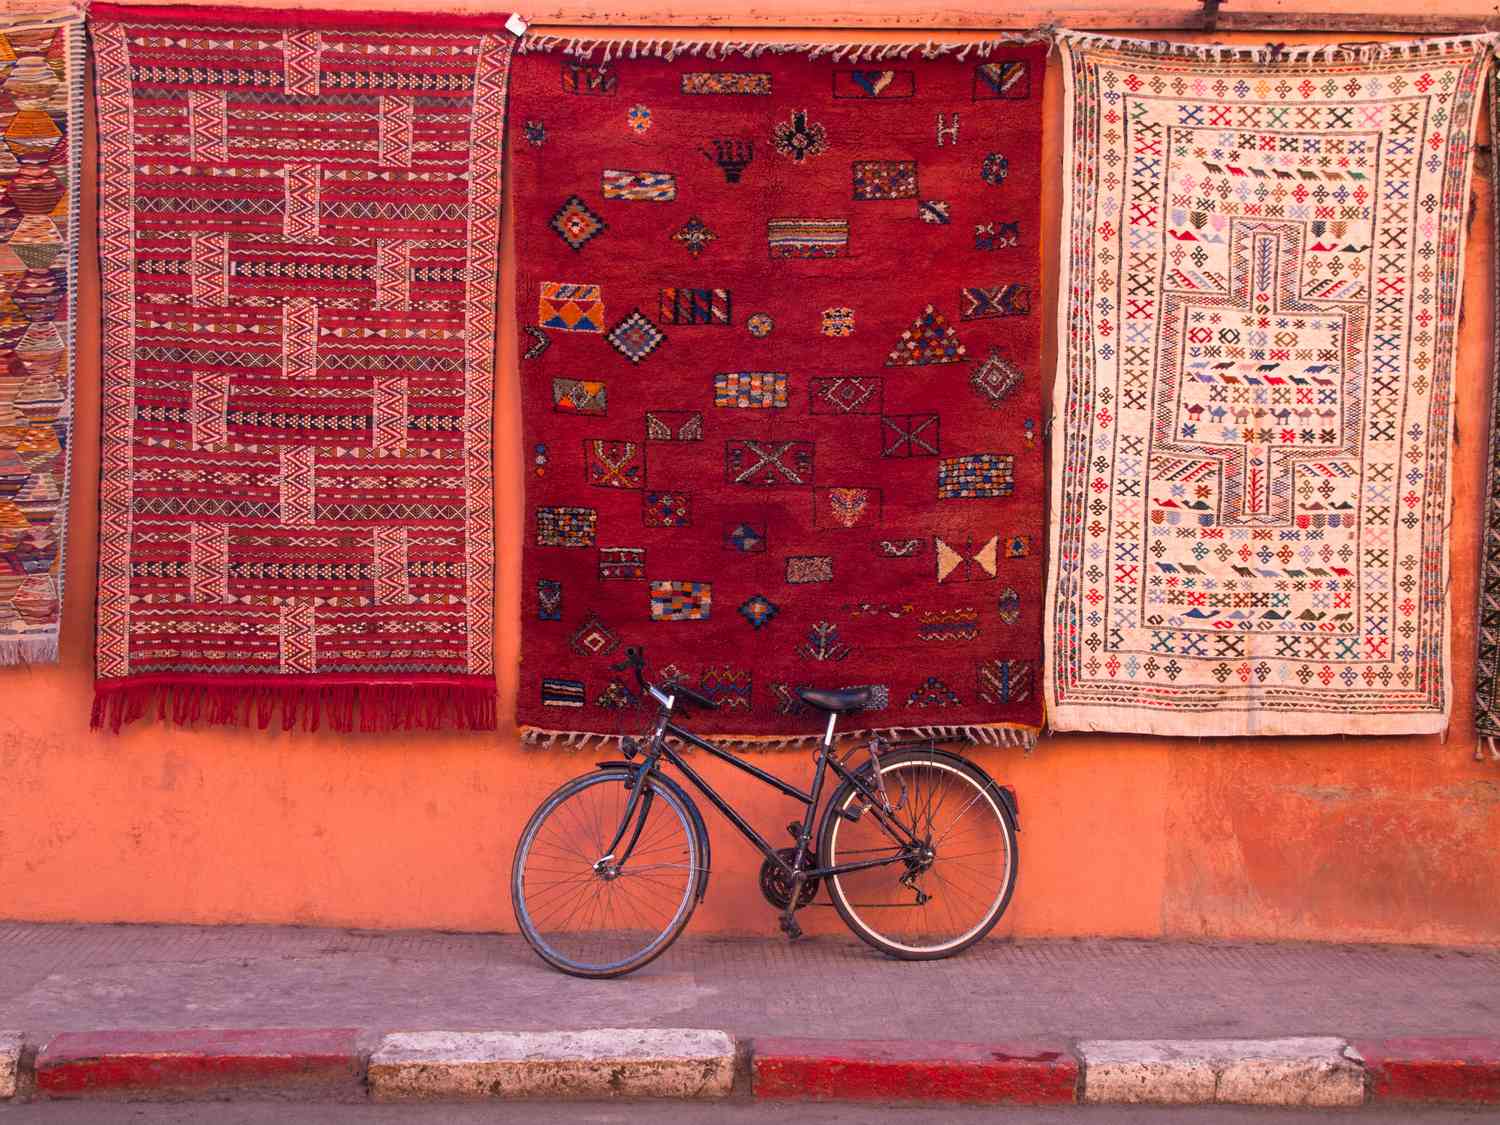 An der Wand geparktes Fahrrad unter hängenden Teppichen mit traditionellen Mustern.